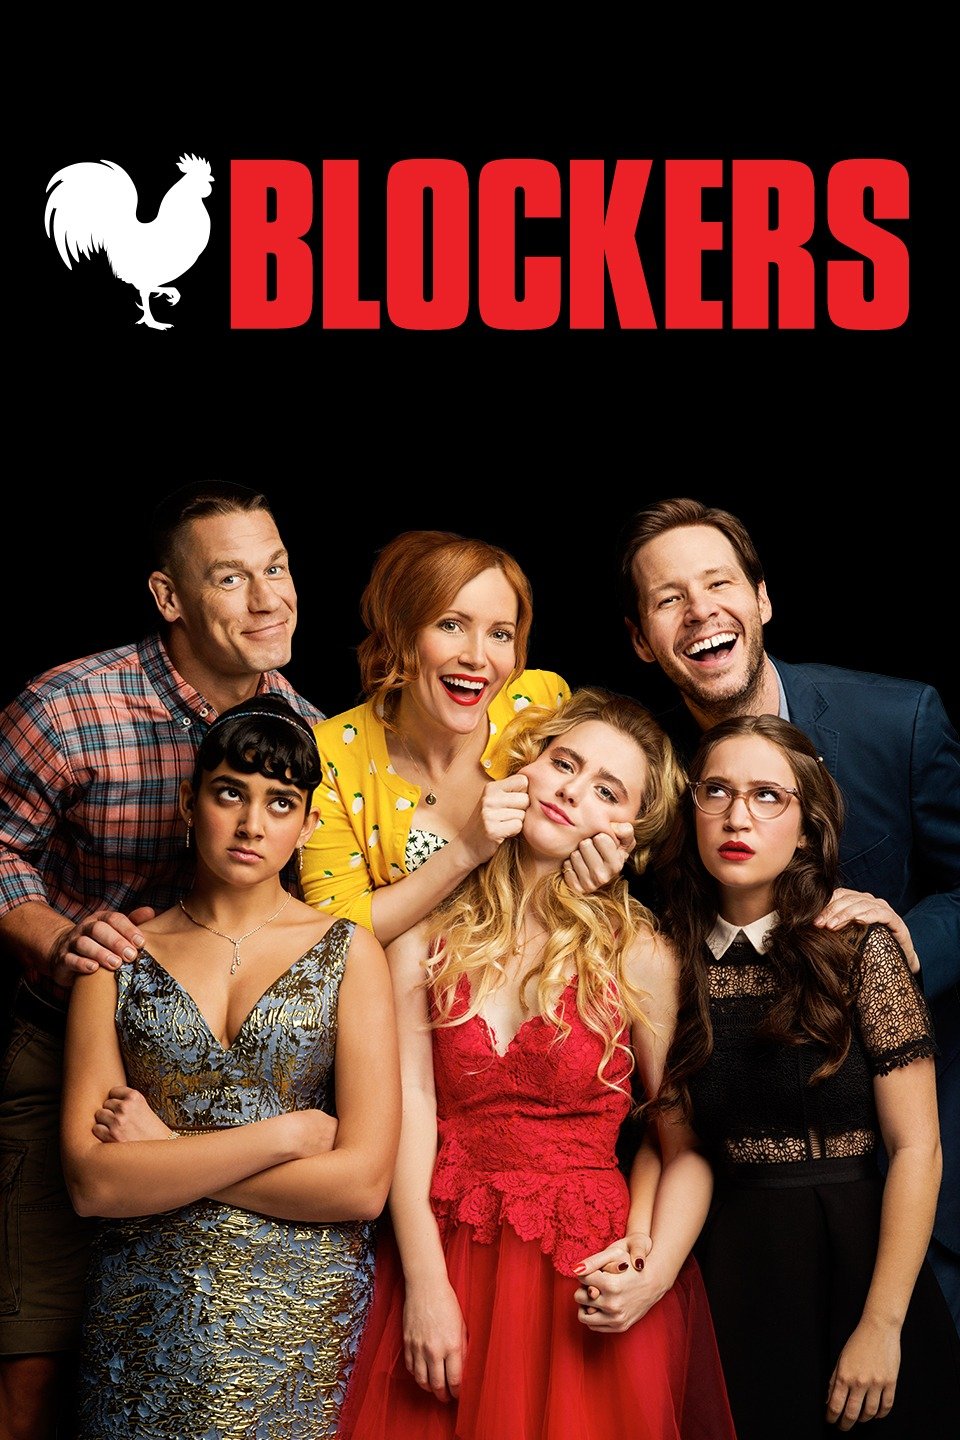 [ฝรั่ง] Blockers (2018) บล็อกซั่ม วันพรอมป่วน [1080p] [เสียงอังกฤษ DTS] [Soundtrack บรรยายไทย] [เสียงอังกฤษ + ซับไทย + อังกฤษ]